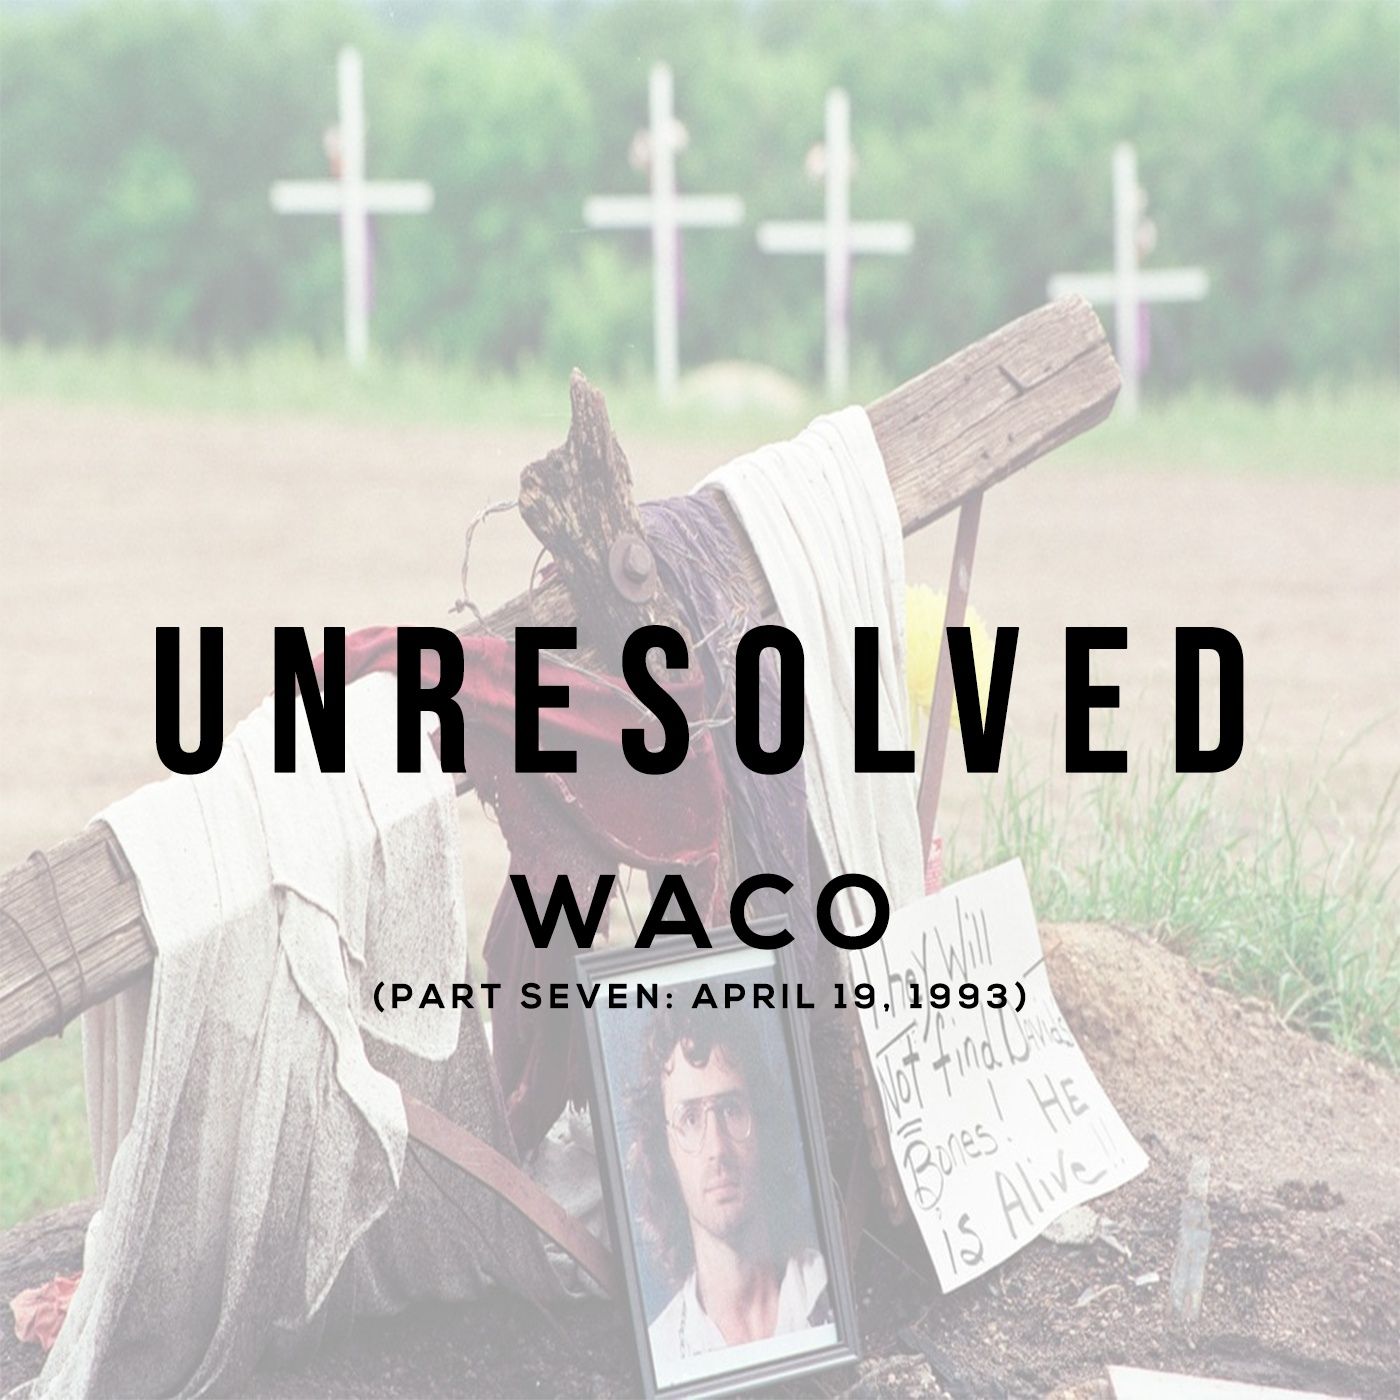 Waco (Part Seven: April 19, 1993)